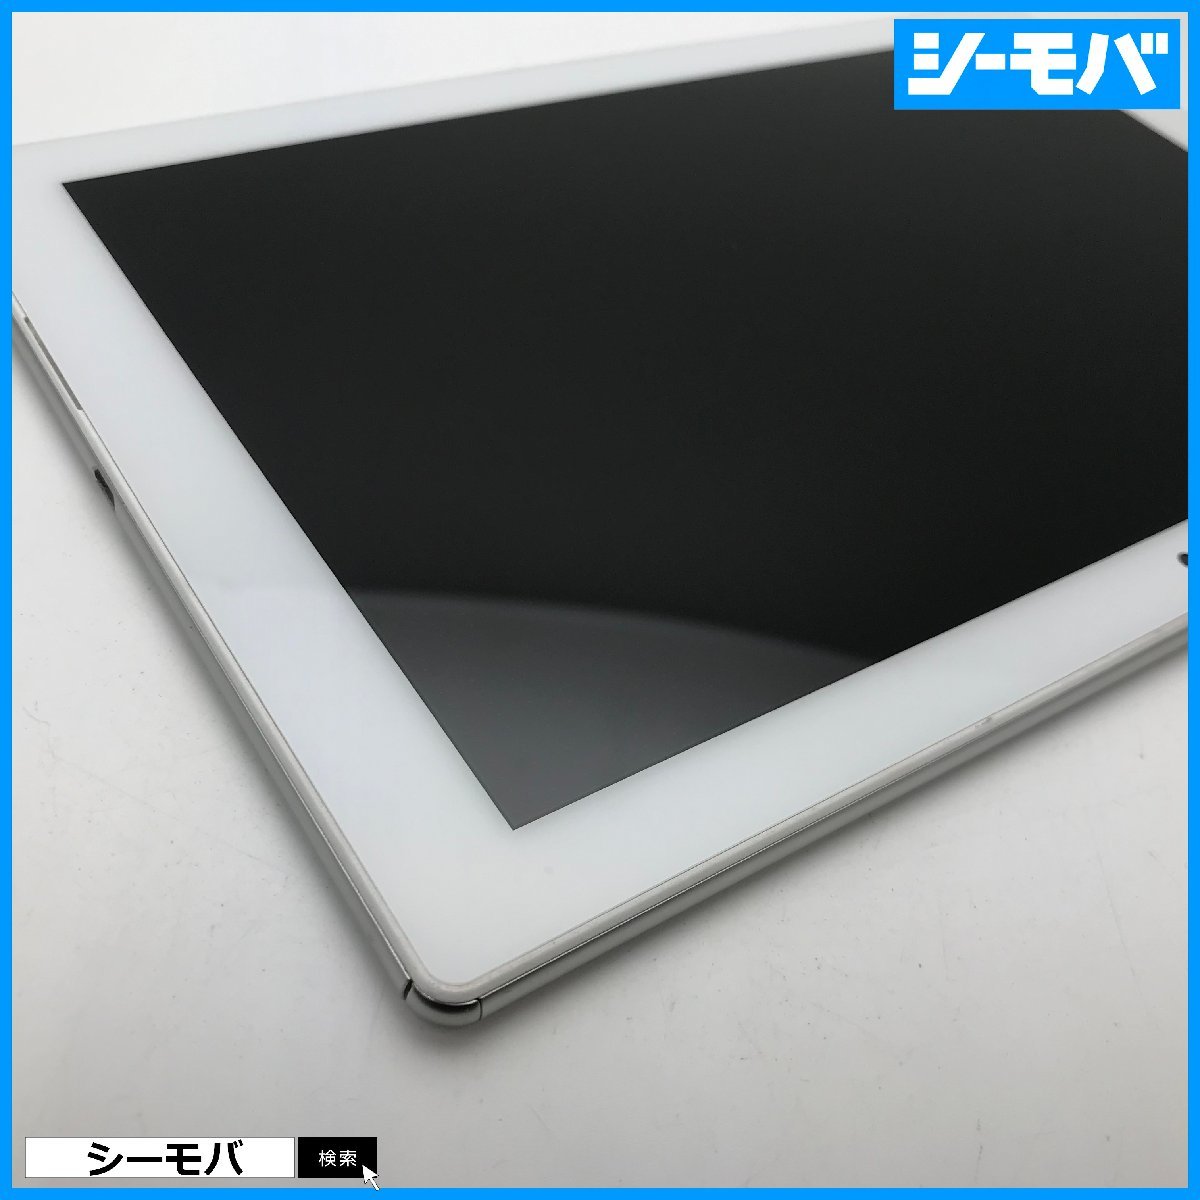 タブレット SIMフリーSIMロック解除済 au SONY Xperia Z4 Tablet SOT31 ホワイト 美品訳あり 10.1インチ バージョン7.0 RUUN10843_画像5